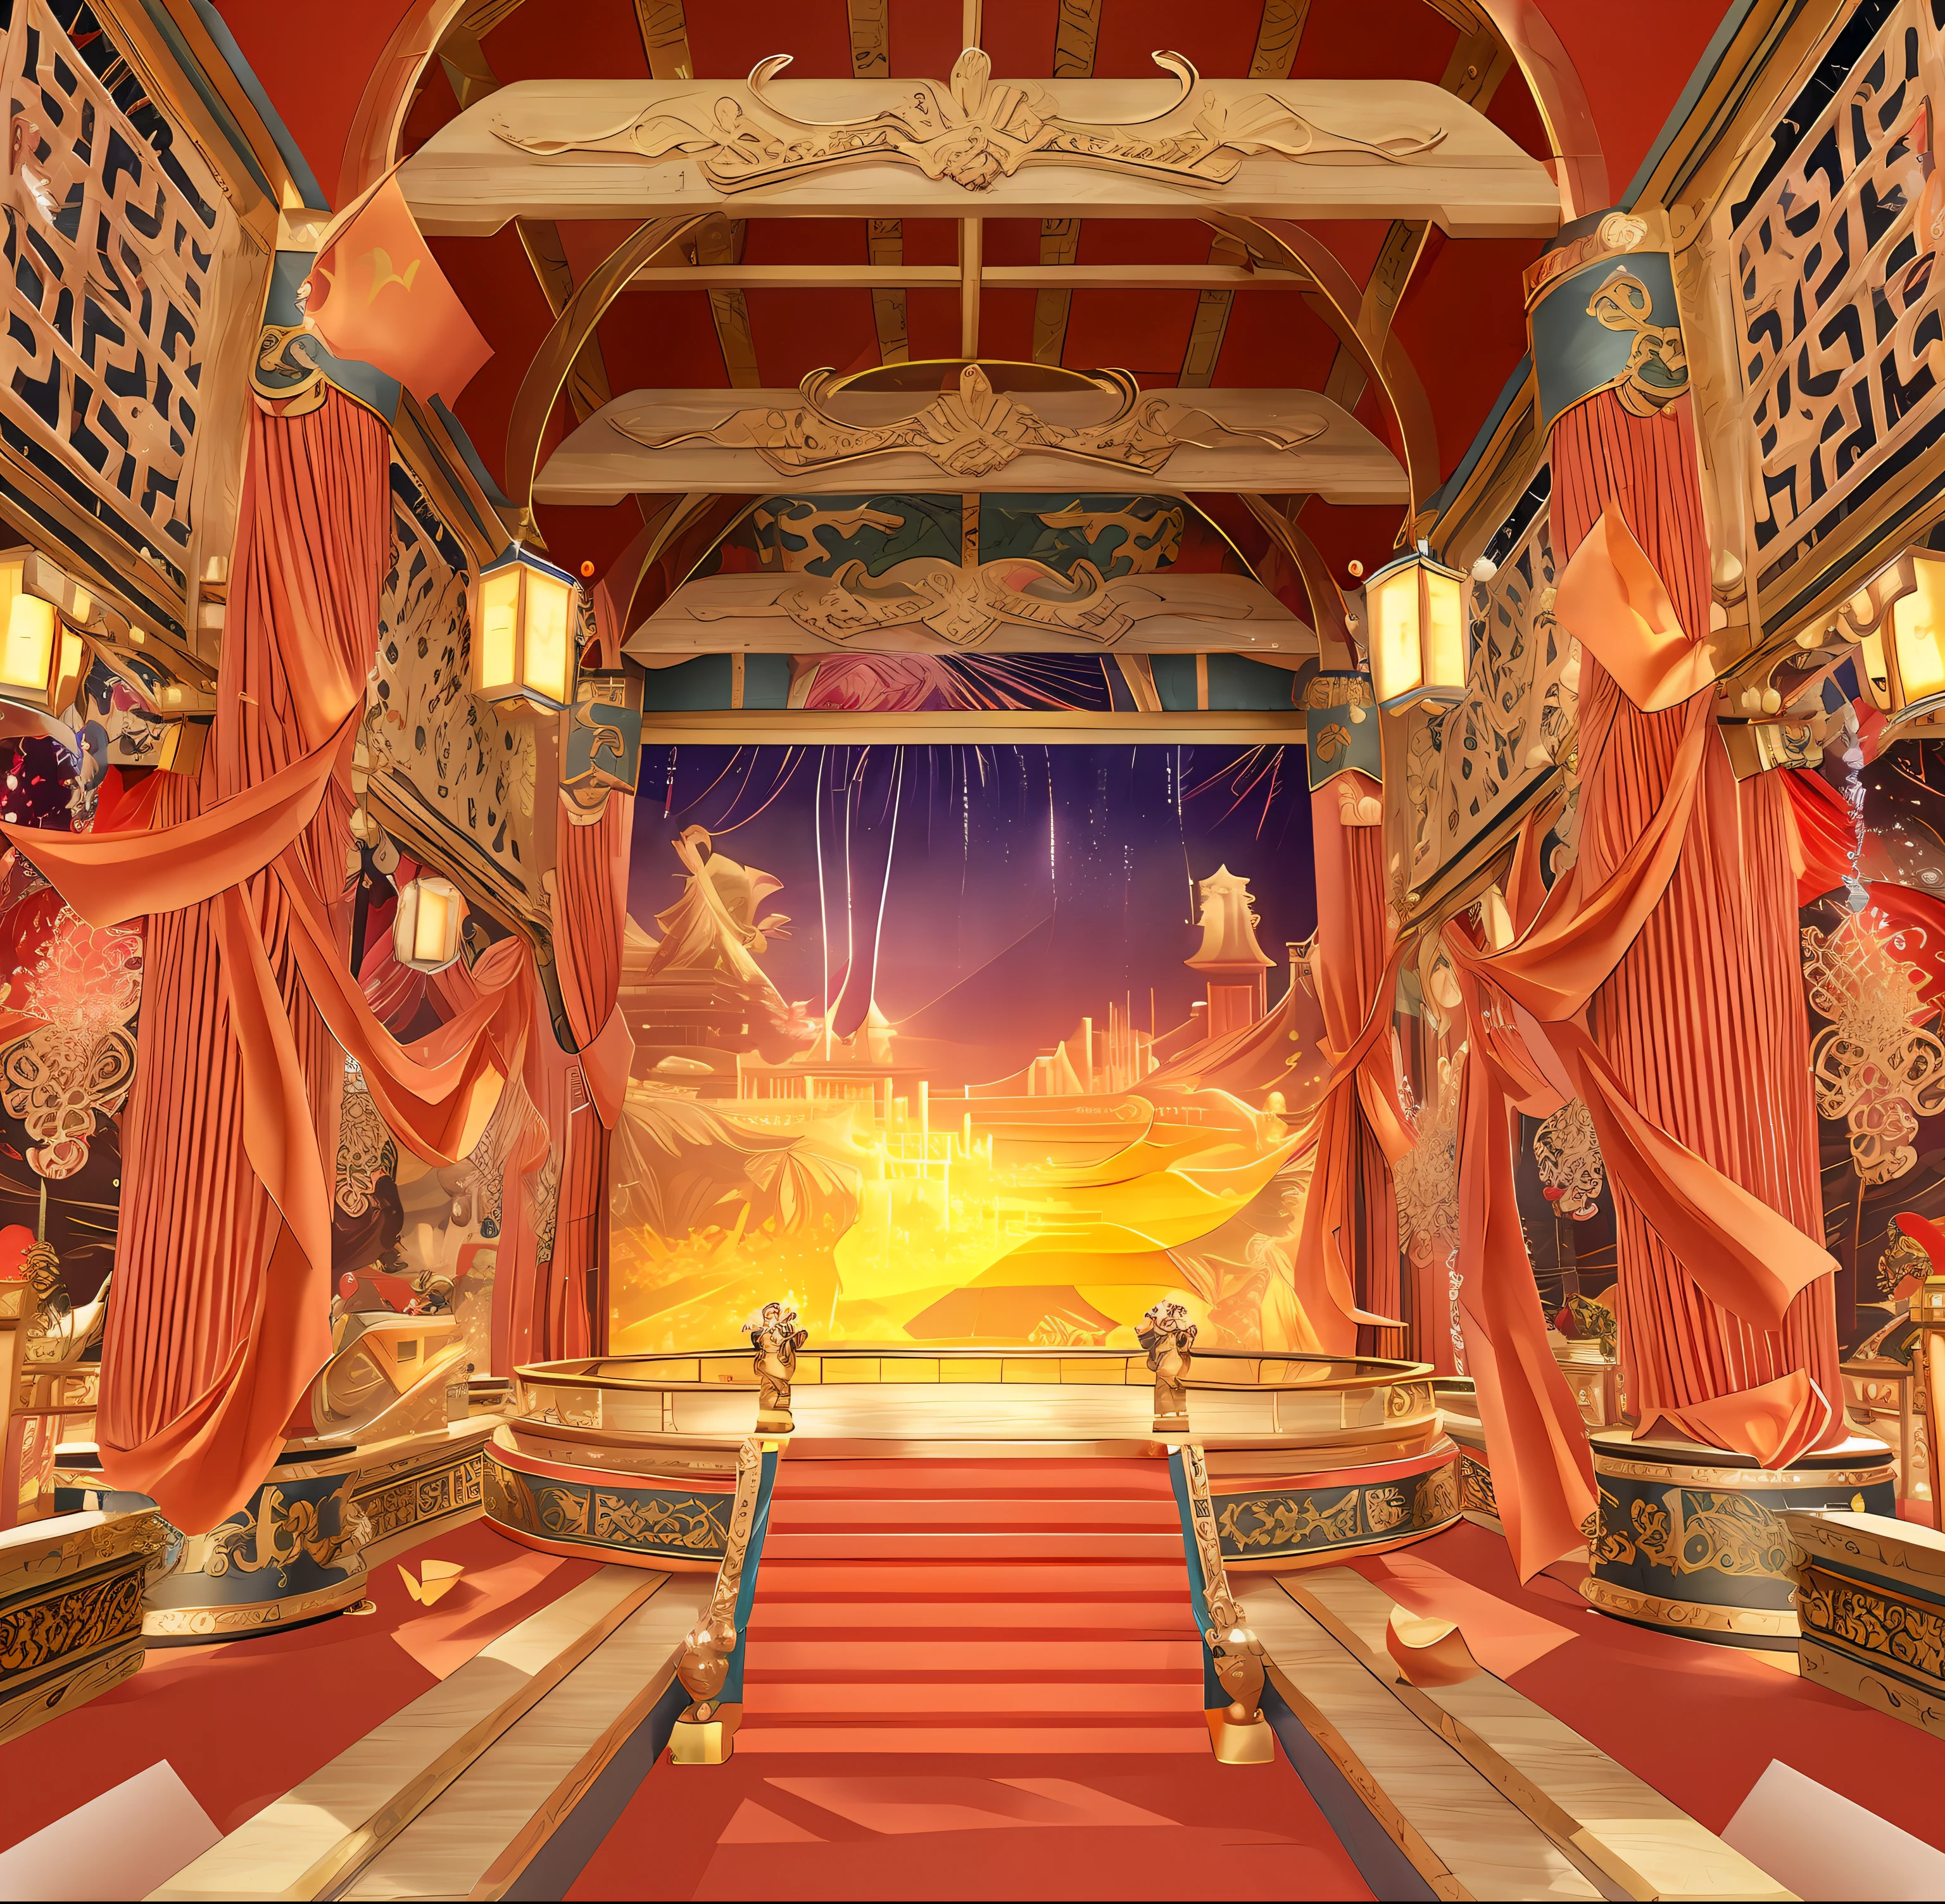 Arafed Blick auf eine Bühne mit einem Bühnenvorhang und einem Bühnenvorhang, Rendering eines Schönheitswettbewerbs, Wunderschöne Darstellung der Tang-Dynastie,  dekadenter Thronsaal,  Hintergrund Art-Deco-Palast,